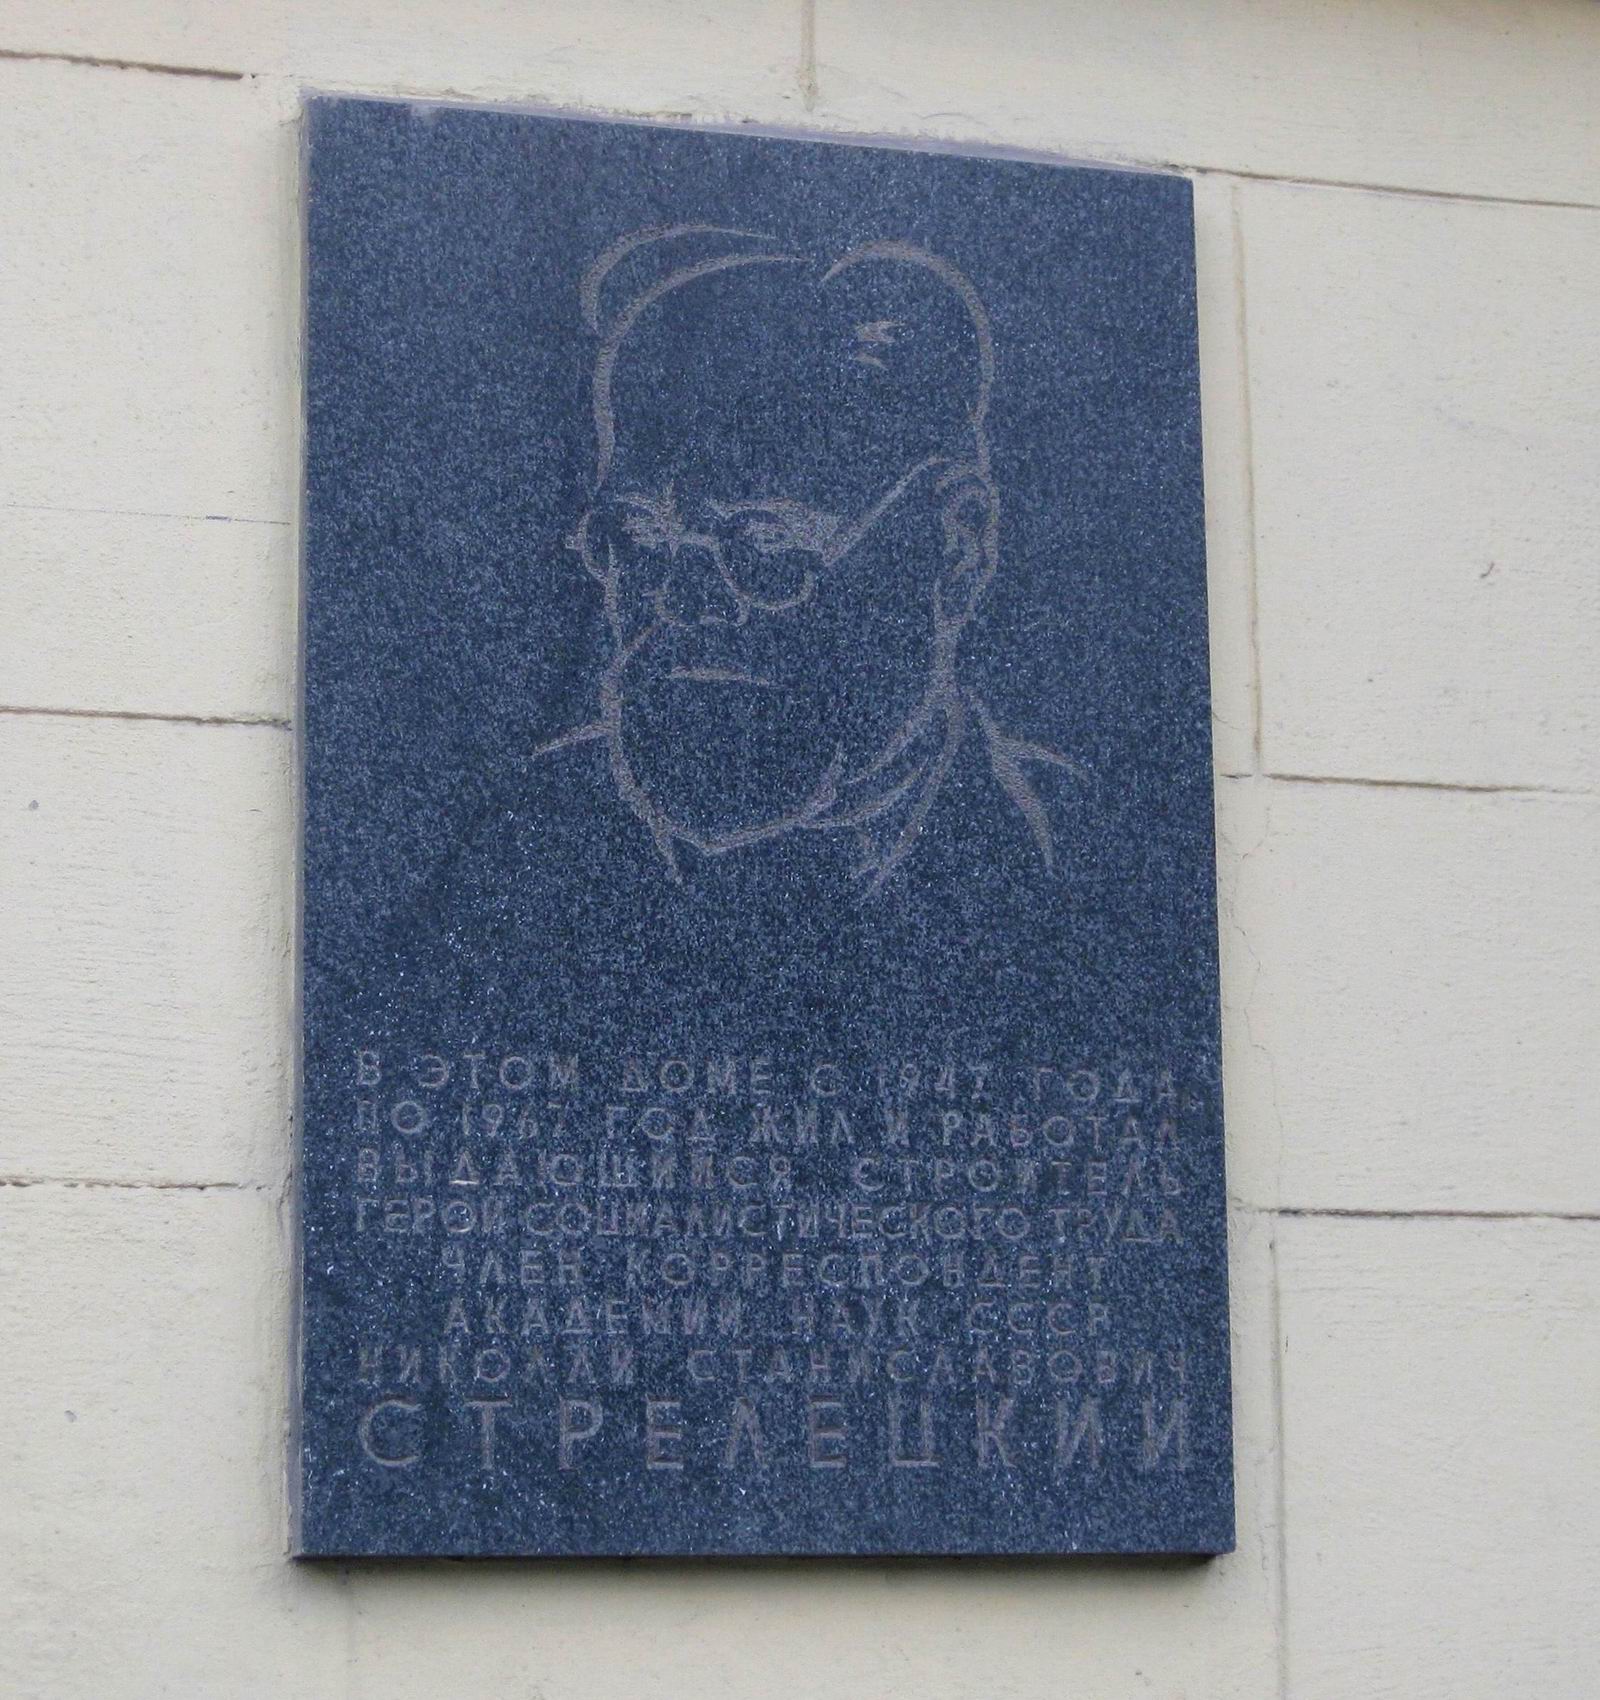 Мемориальная доска Стрелецкому Н.С. (1885–1967), ск. Т.Л.Ельницкая, арх. В.И.Симошнин, в Большом Лёвшинском переулке, дом 9, открыта в мае 1971.